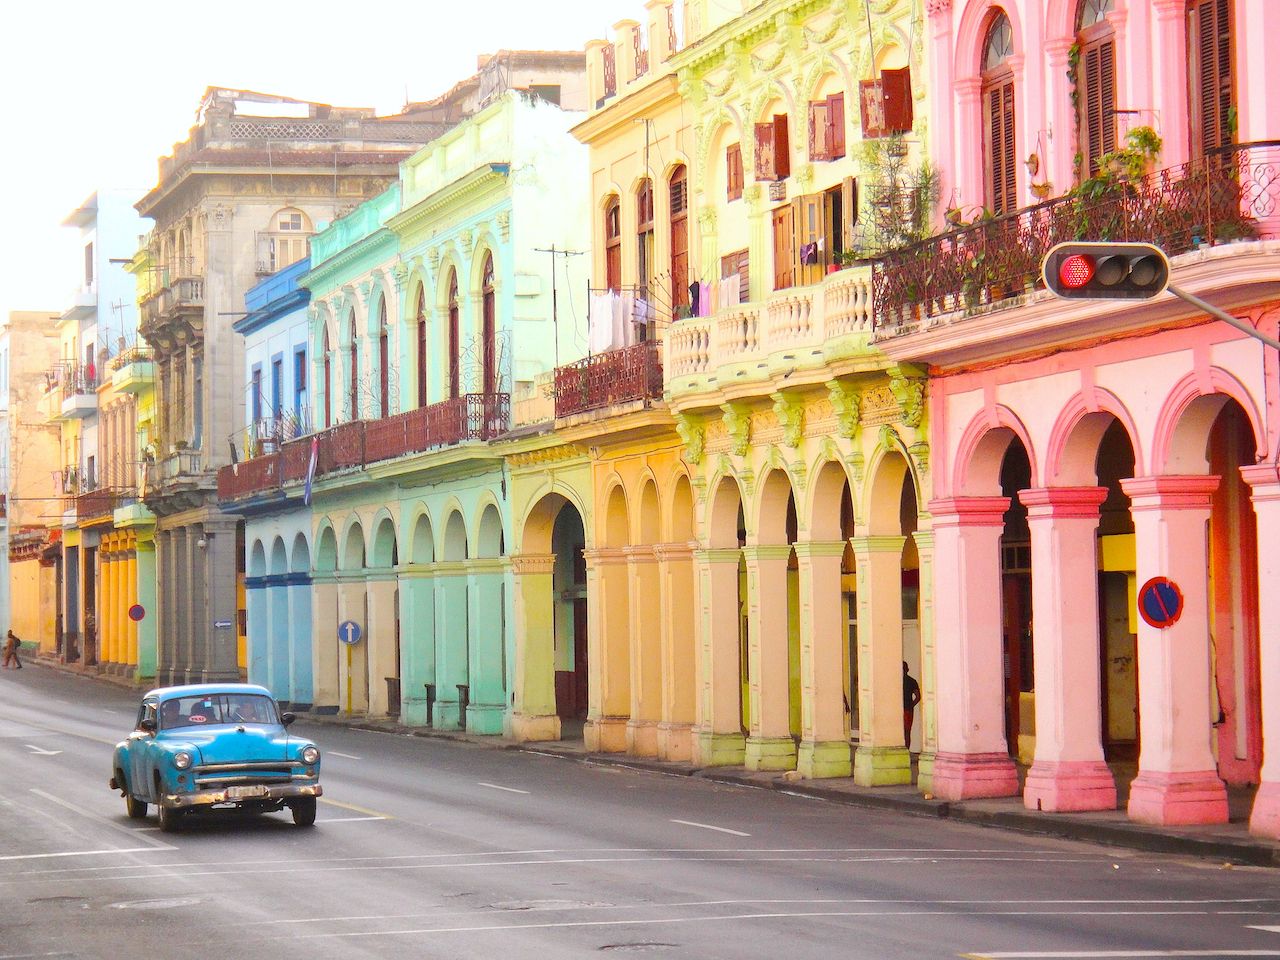 Street in Havana Cuba